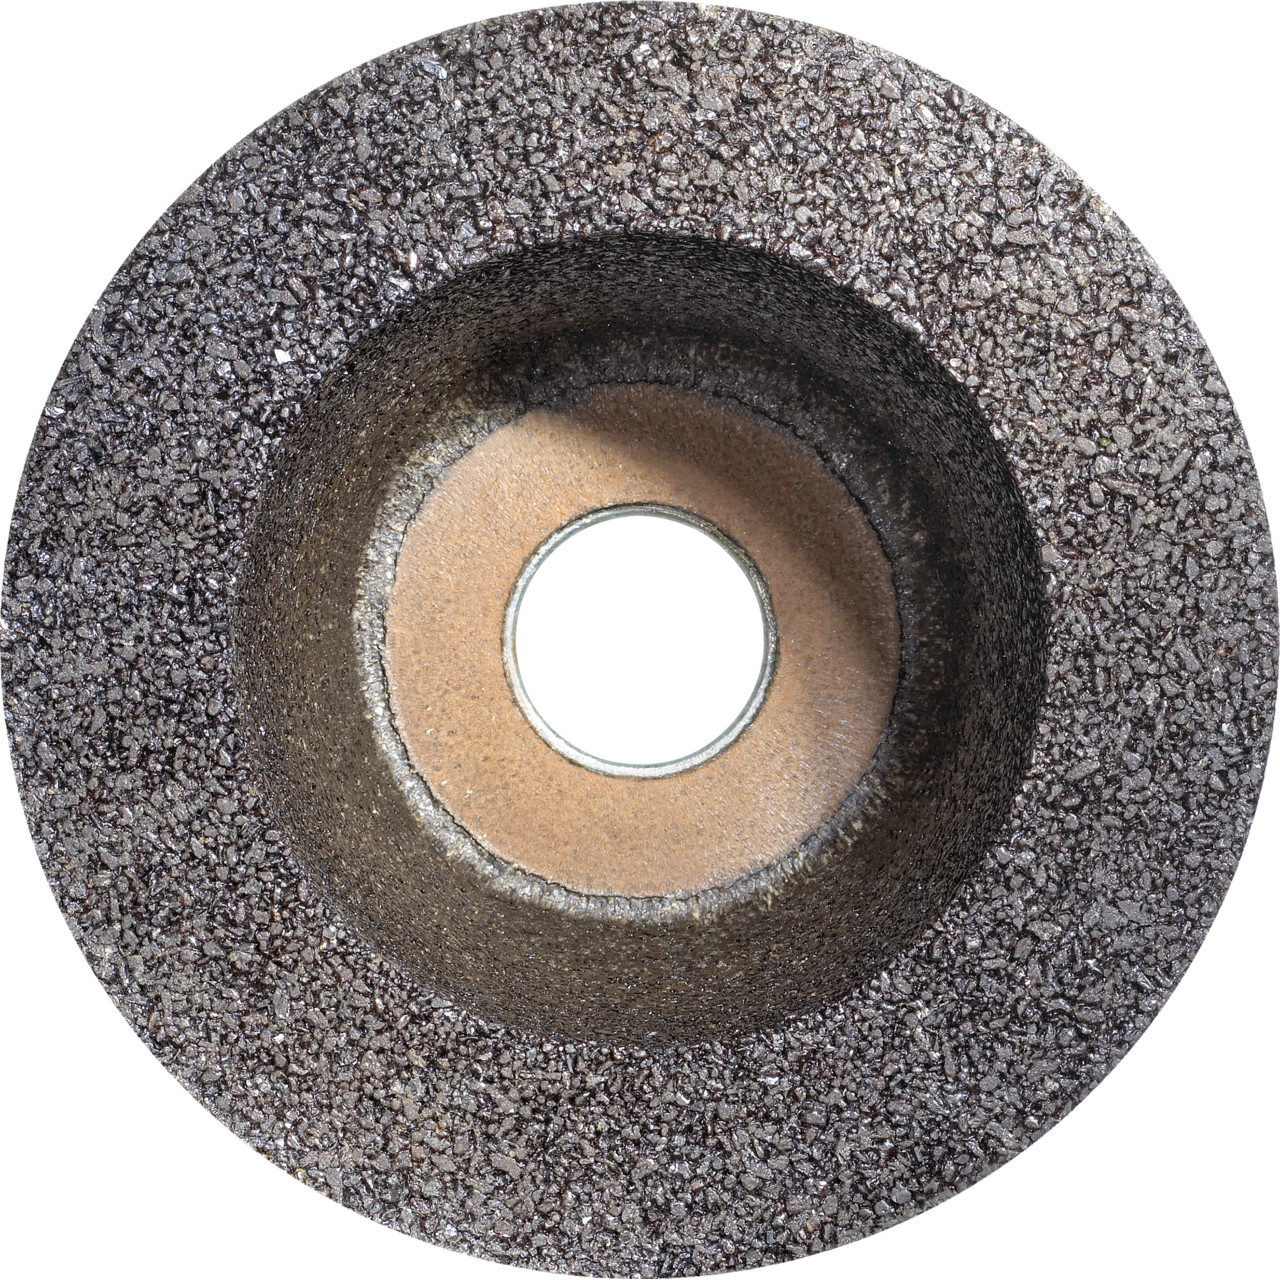 Tazza in resina sintetica TYROLIT D/JxDxH 110/90x55x22,23 Per pietra, forma: ruota a tazza 11BT, Art. 317307